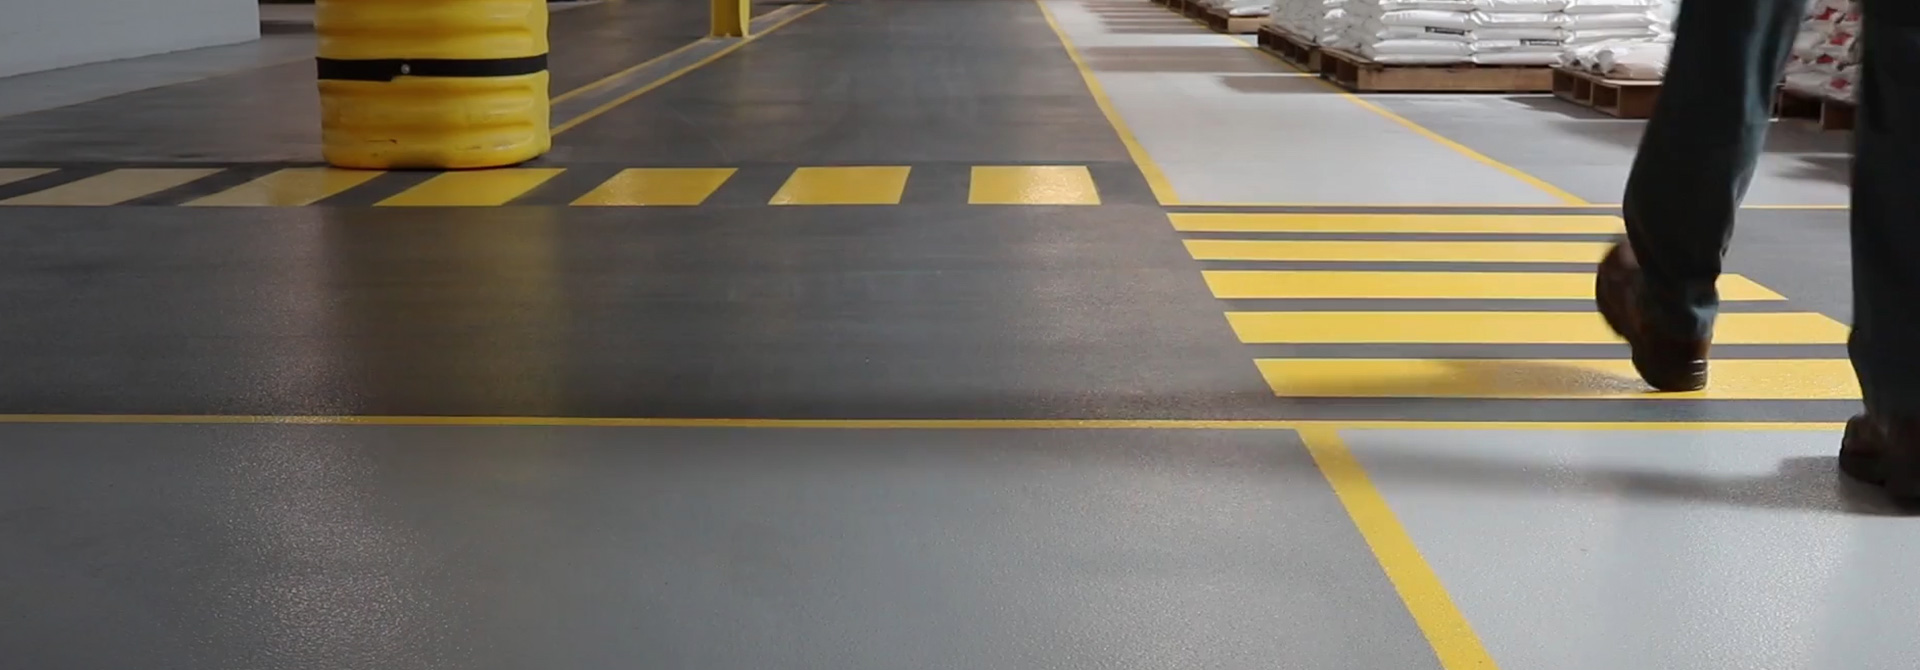 Perfectly flatconcrete floors